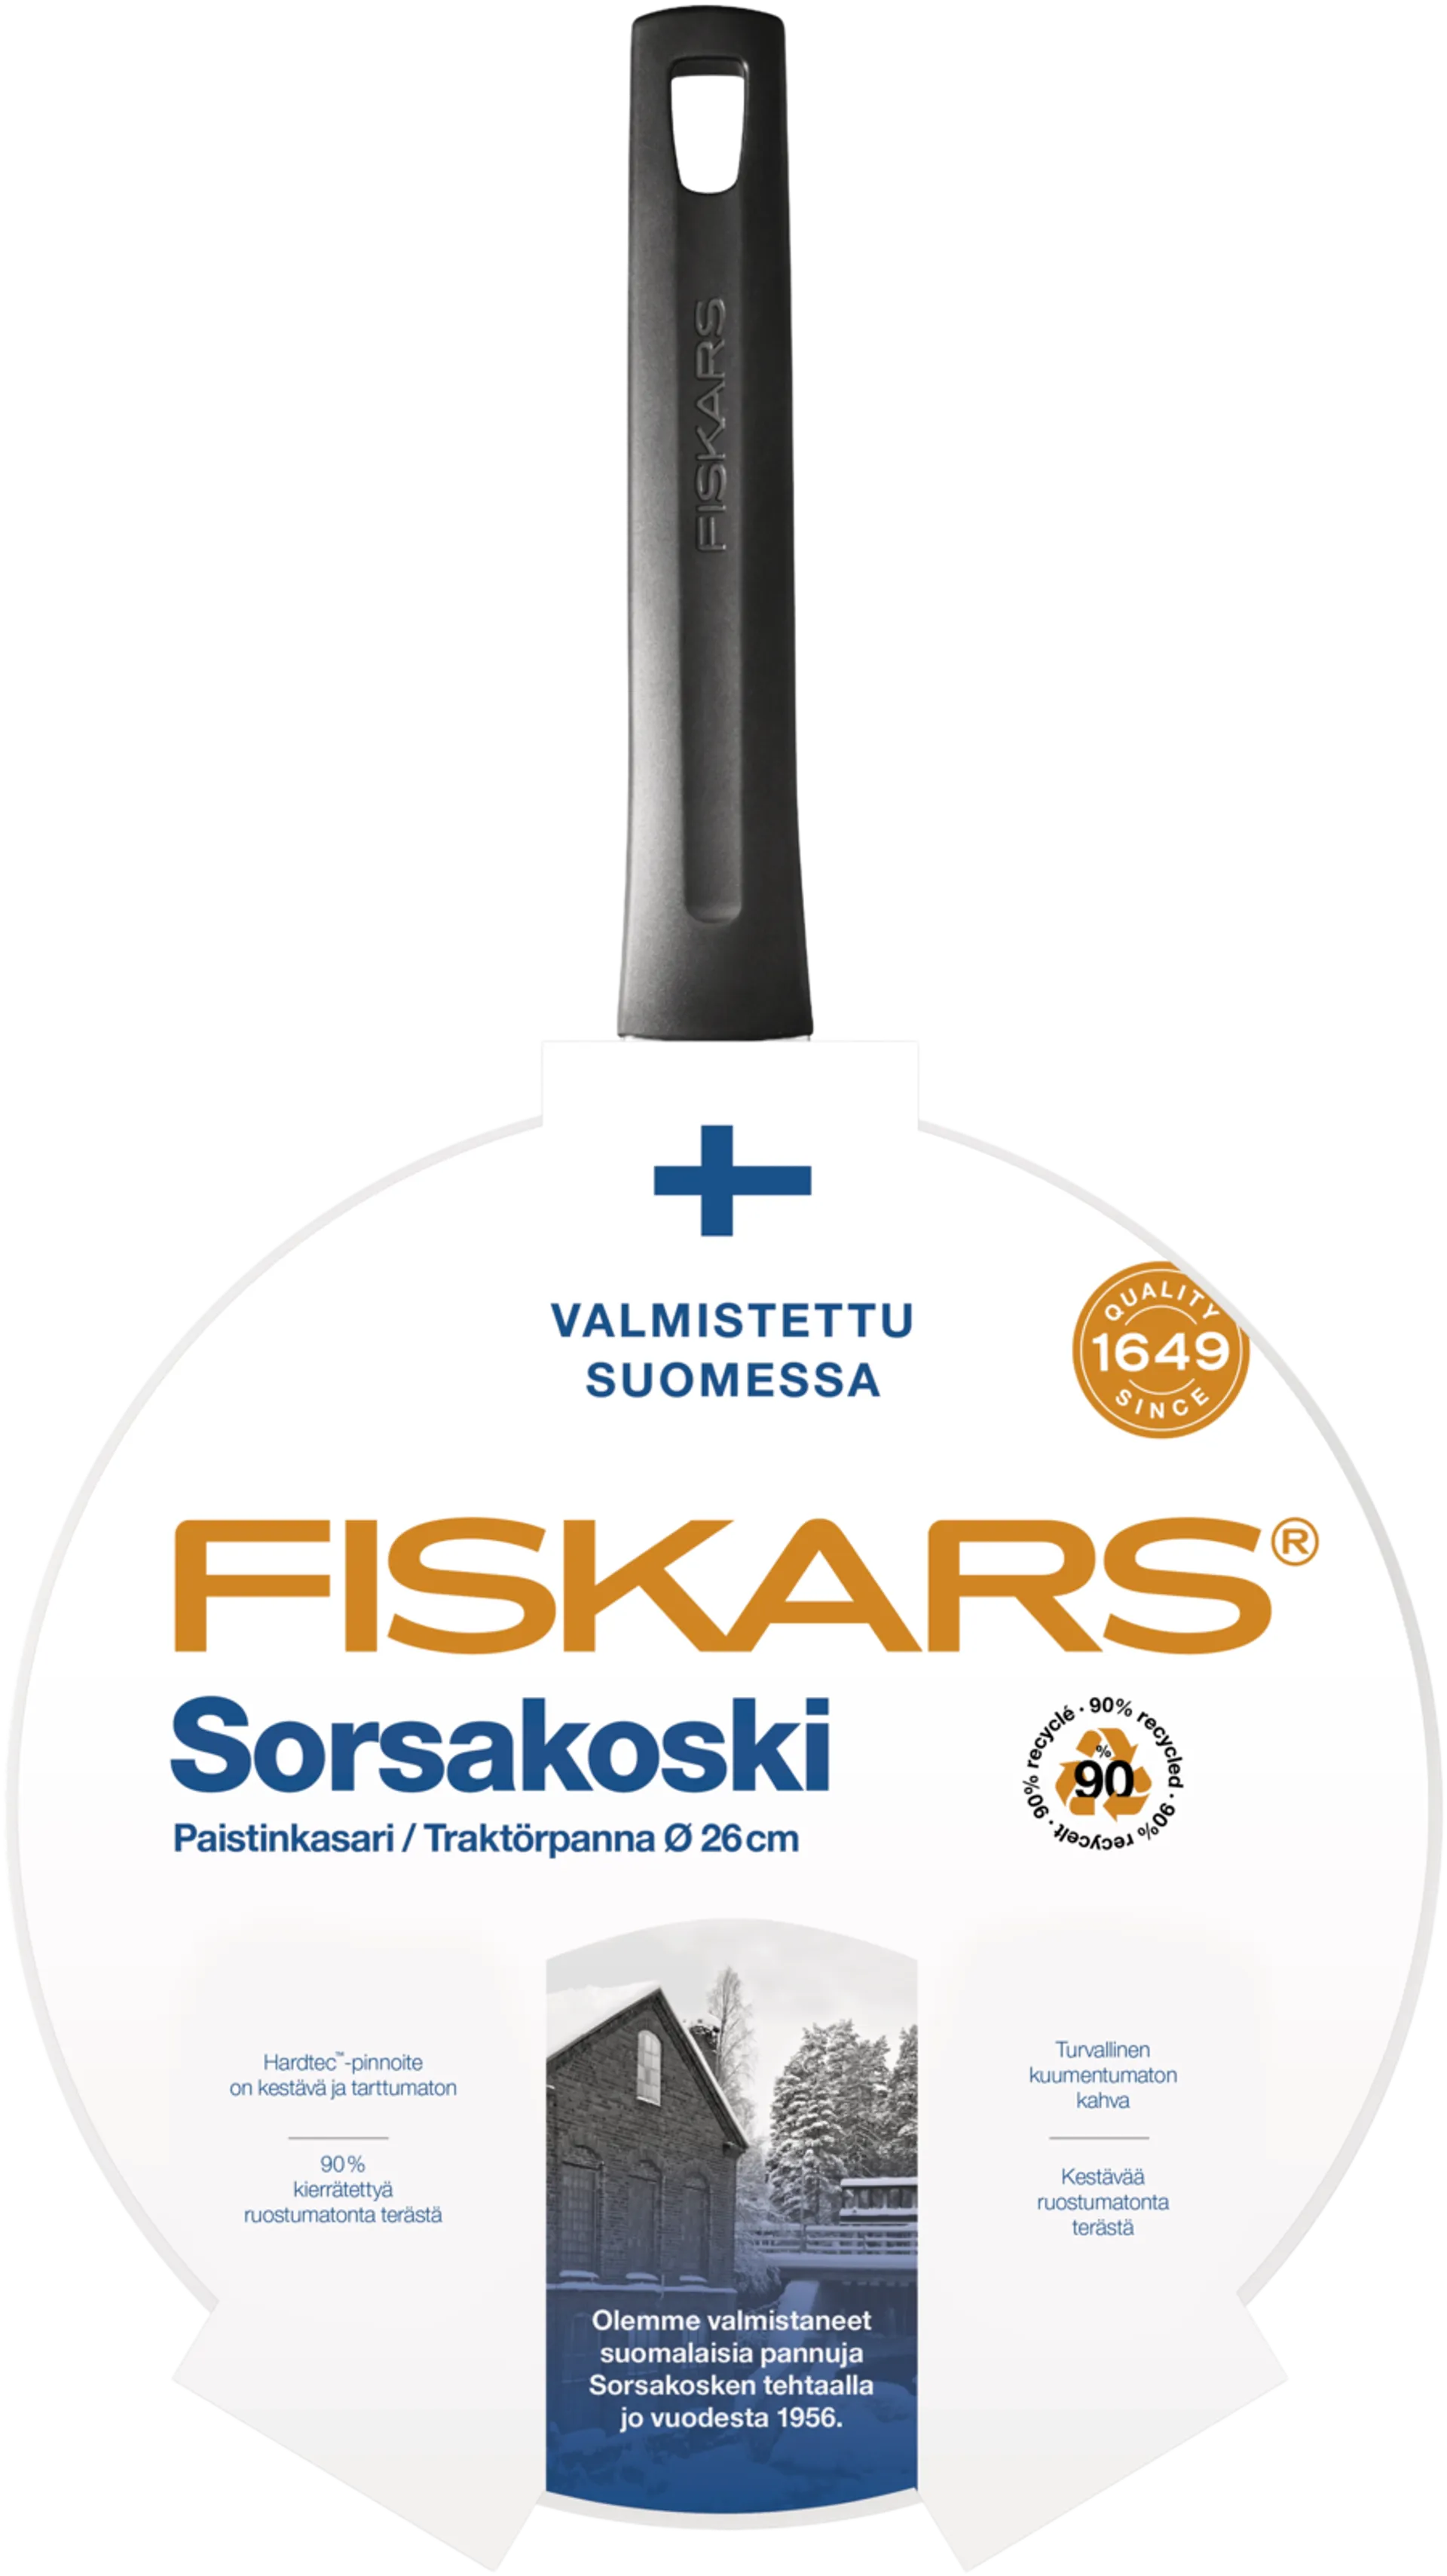 Fiskars Sorsakoski paistokasari 26cm kannella - 2